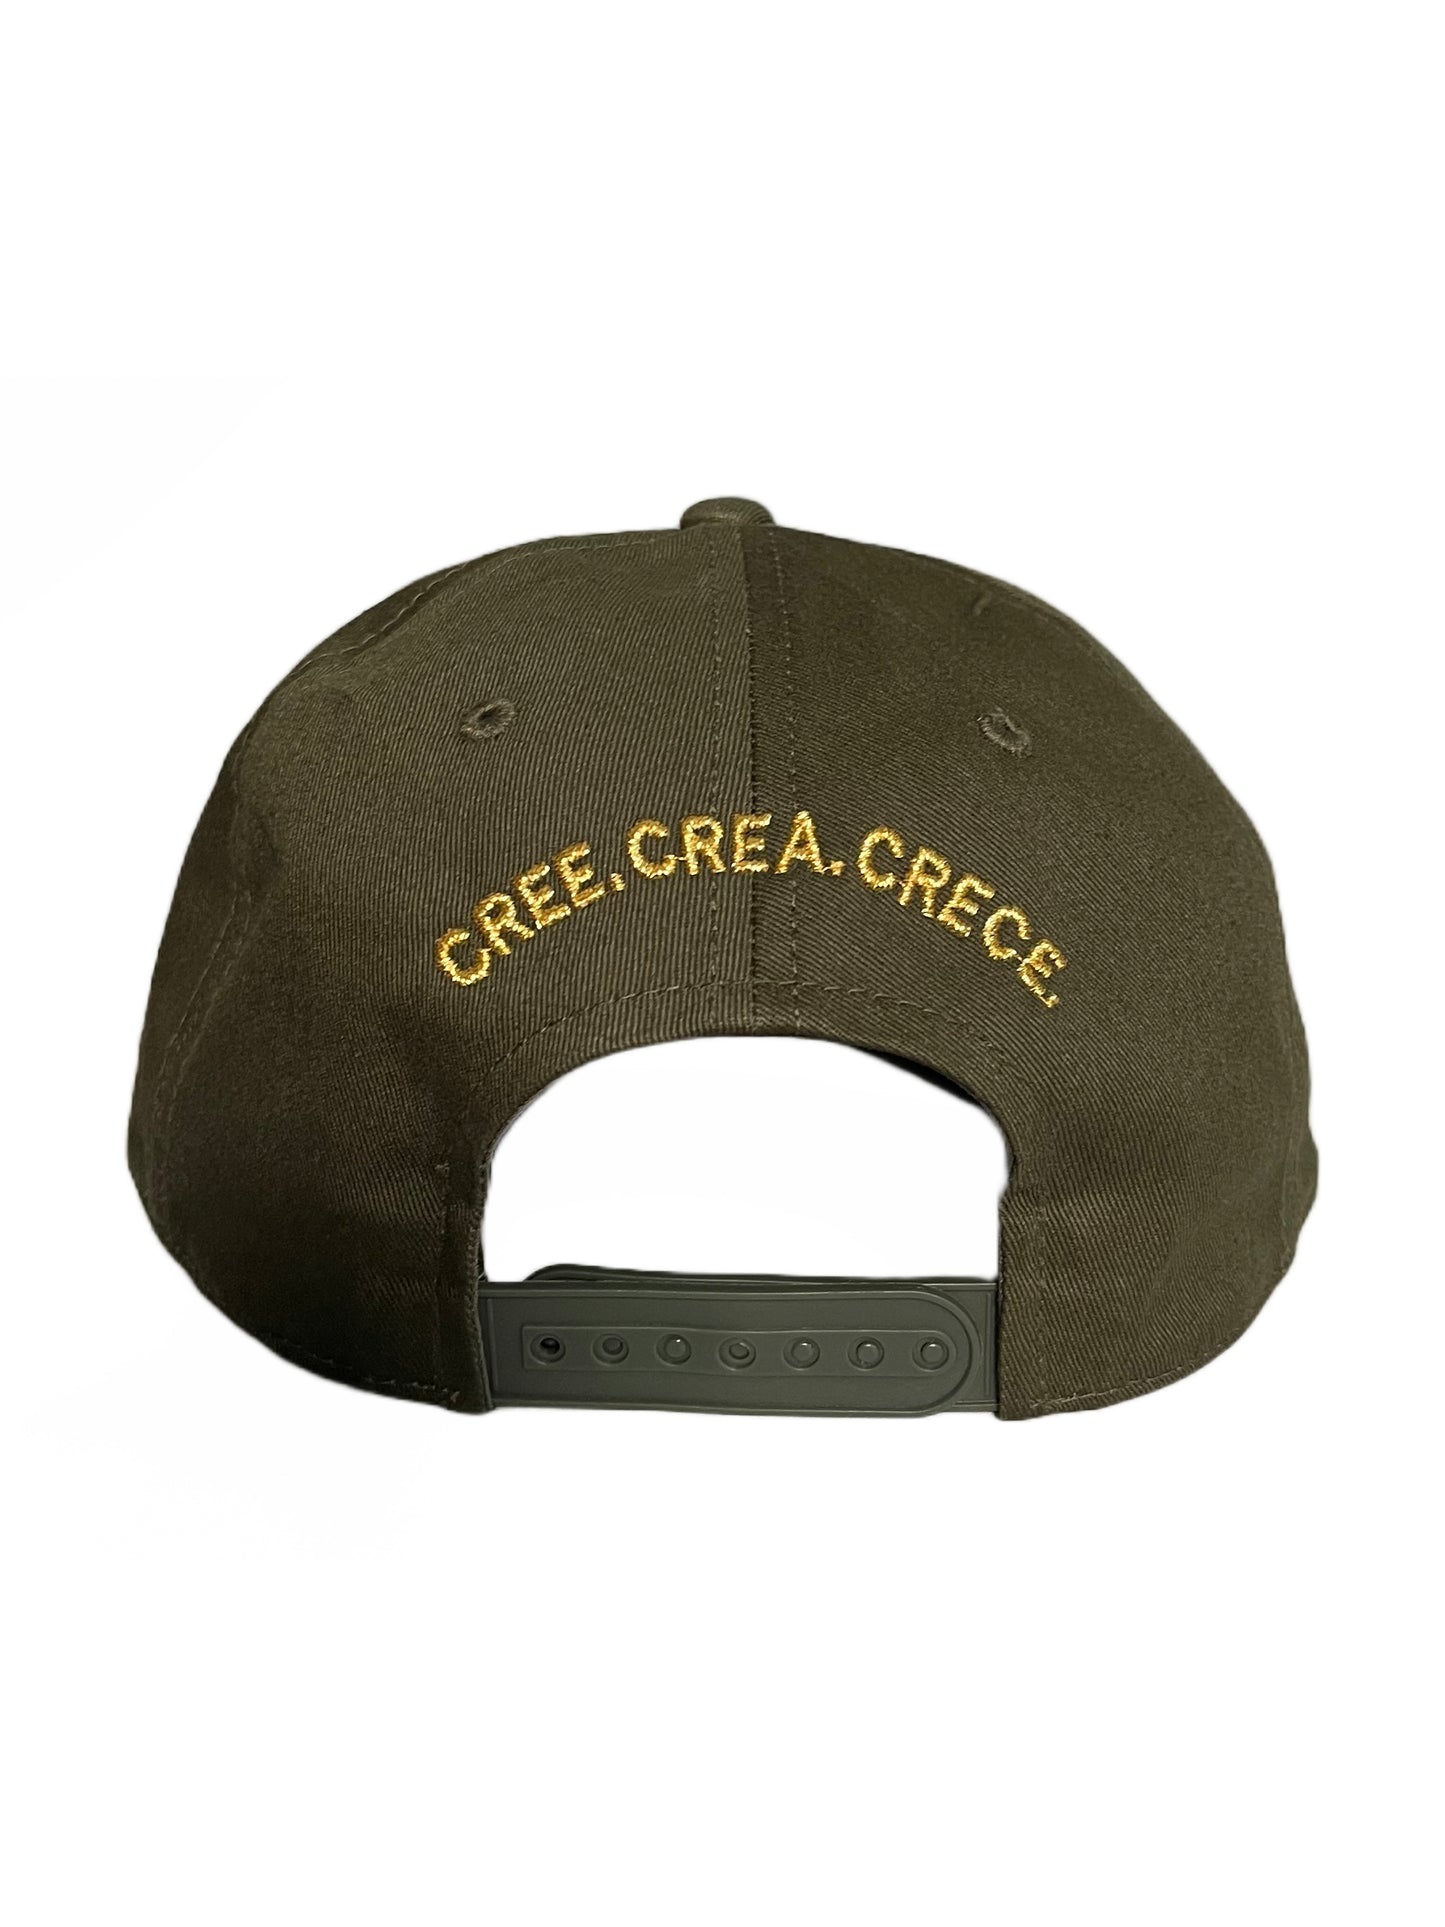 "CREE CREA CRECE FB by Felix Baez 5-Panel Hat